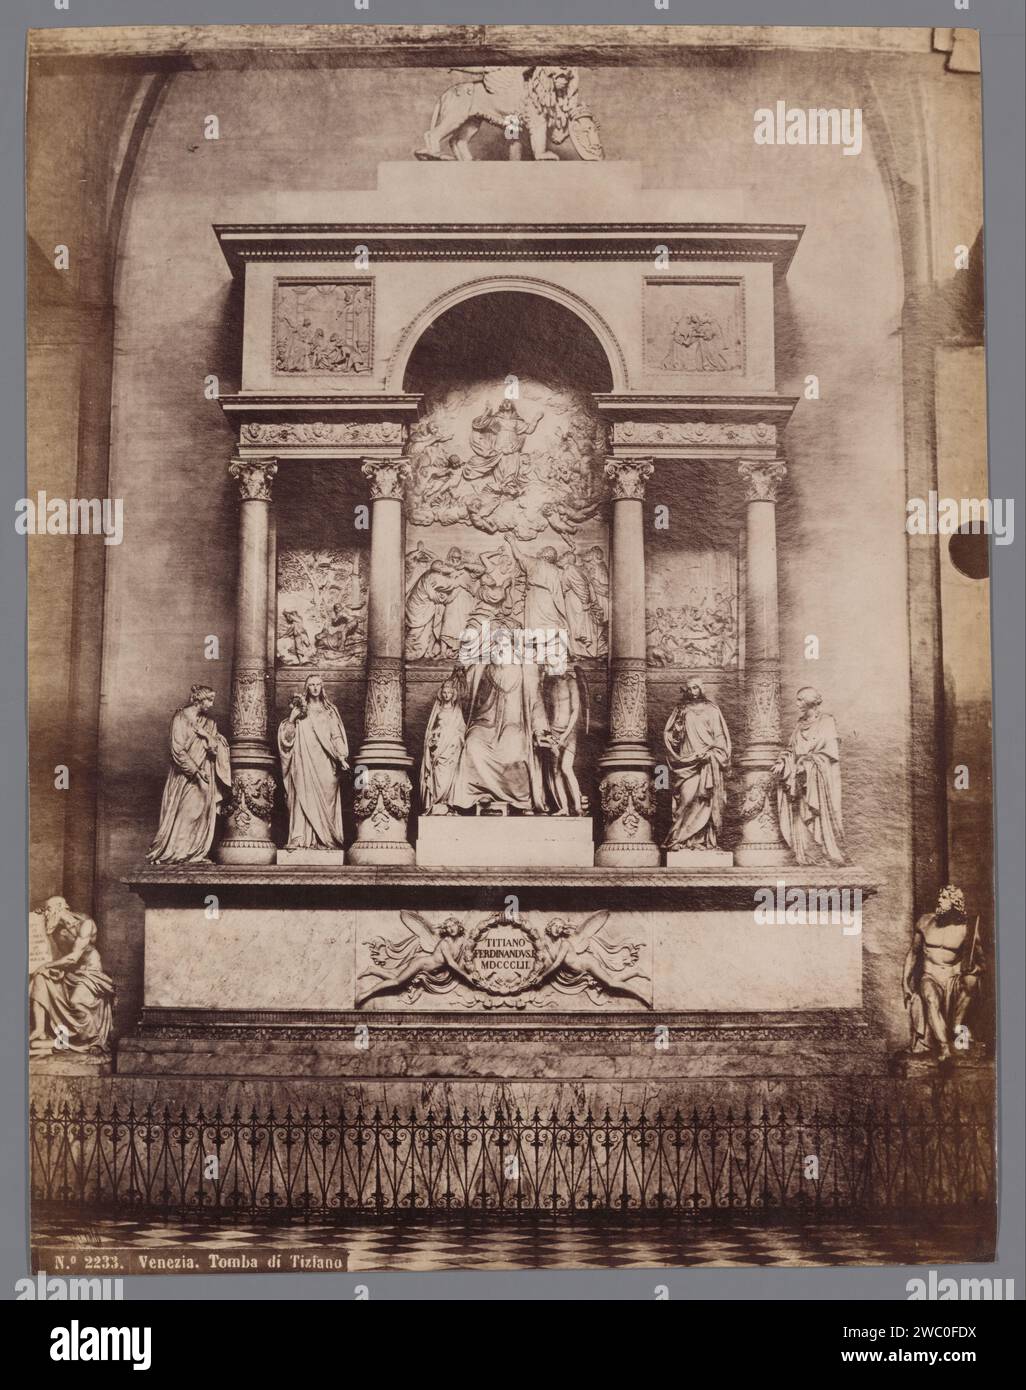 Monument funéraire du Titien, Venise, Anonyme, d'après Luigi Zandomeneghi, 1851 - 1900 photographie Venise papier albumen print tombe-bâtiment, tombeau monumental Venise Banque D'Images